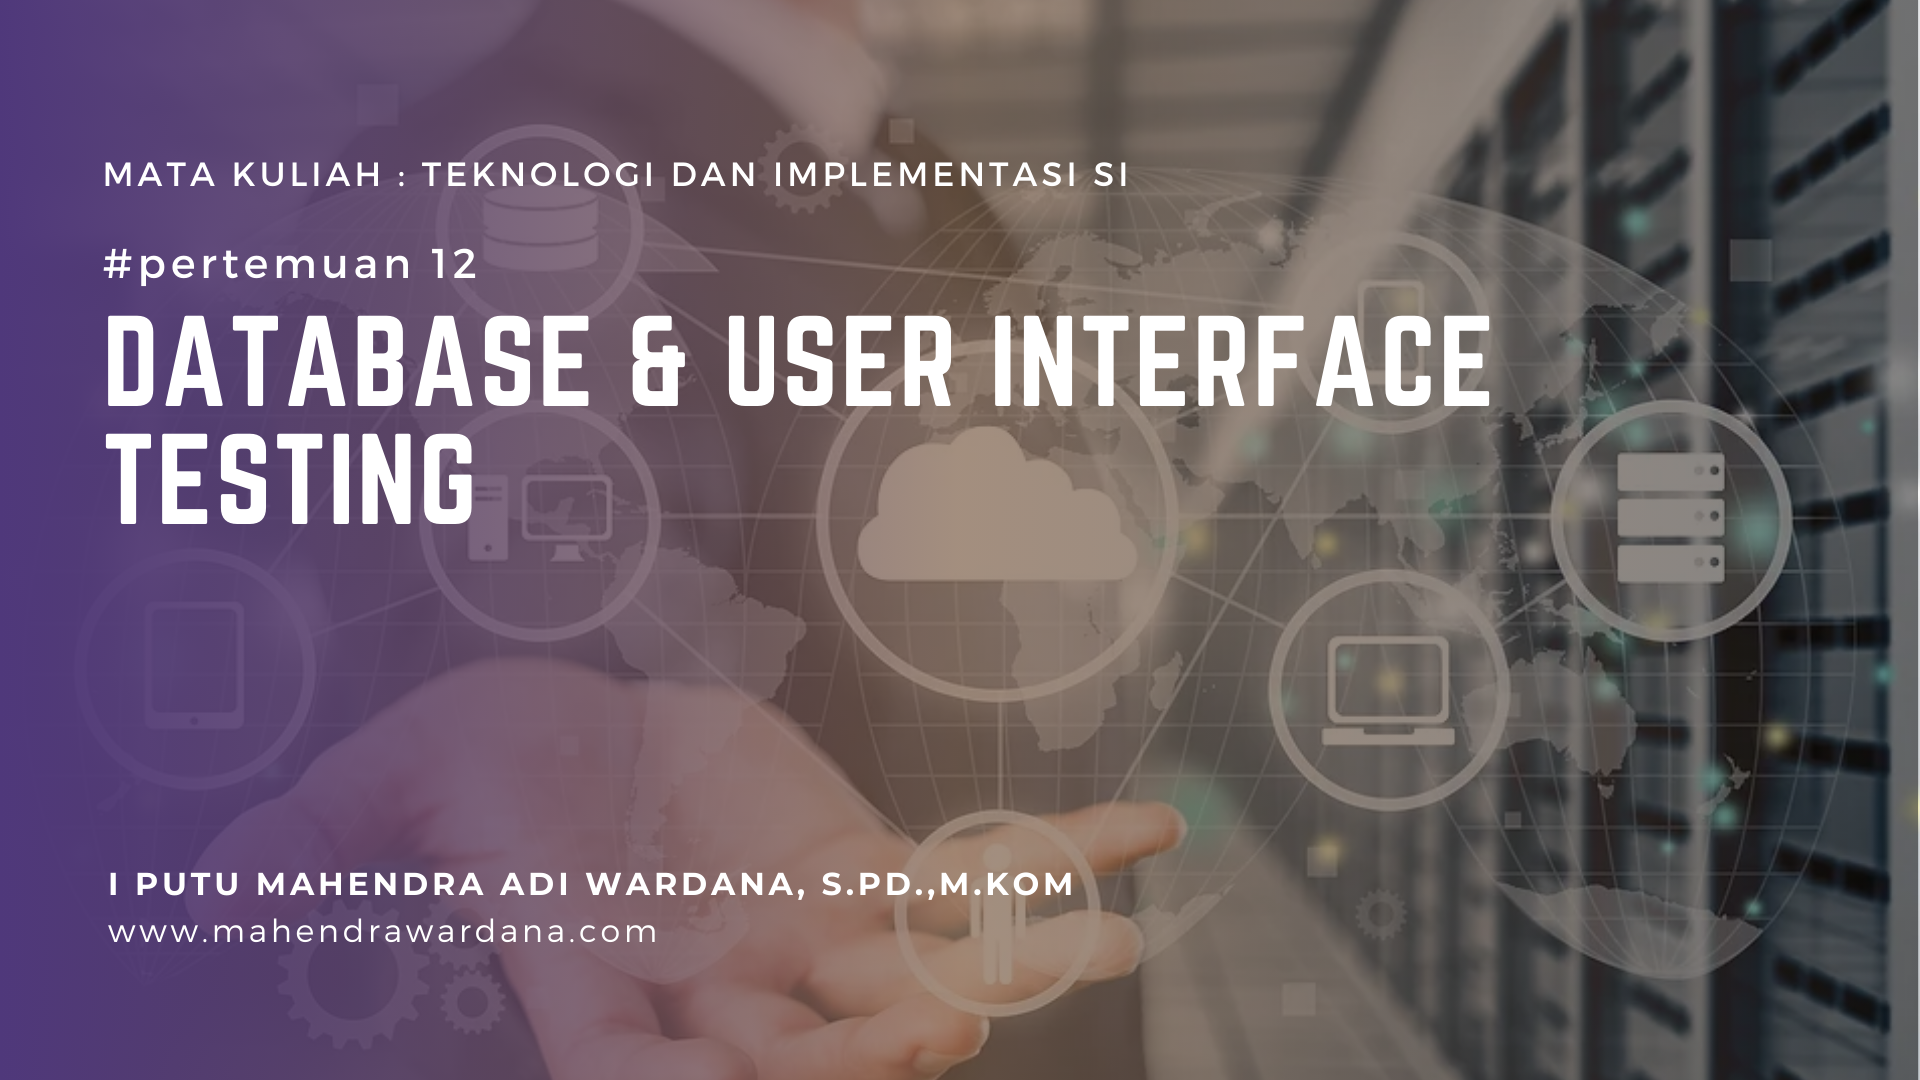 Pertemuan 12 - Database & User Interface Testing